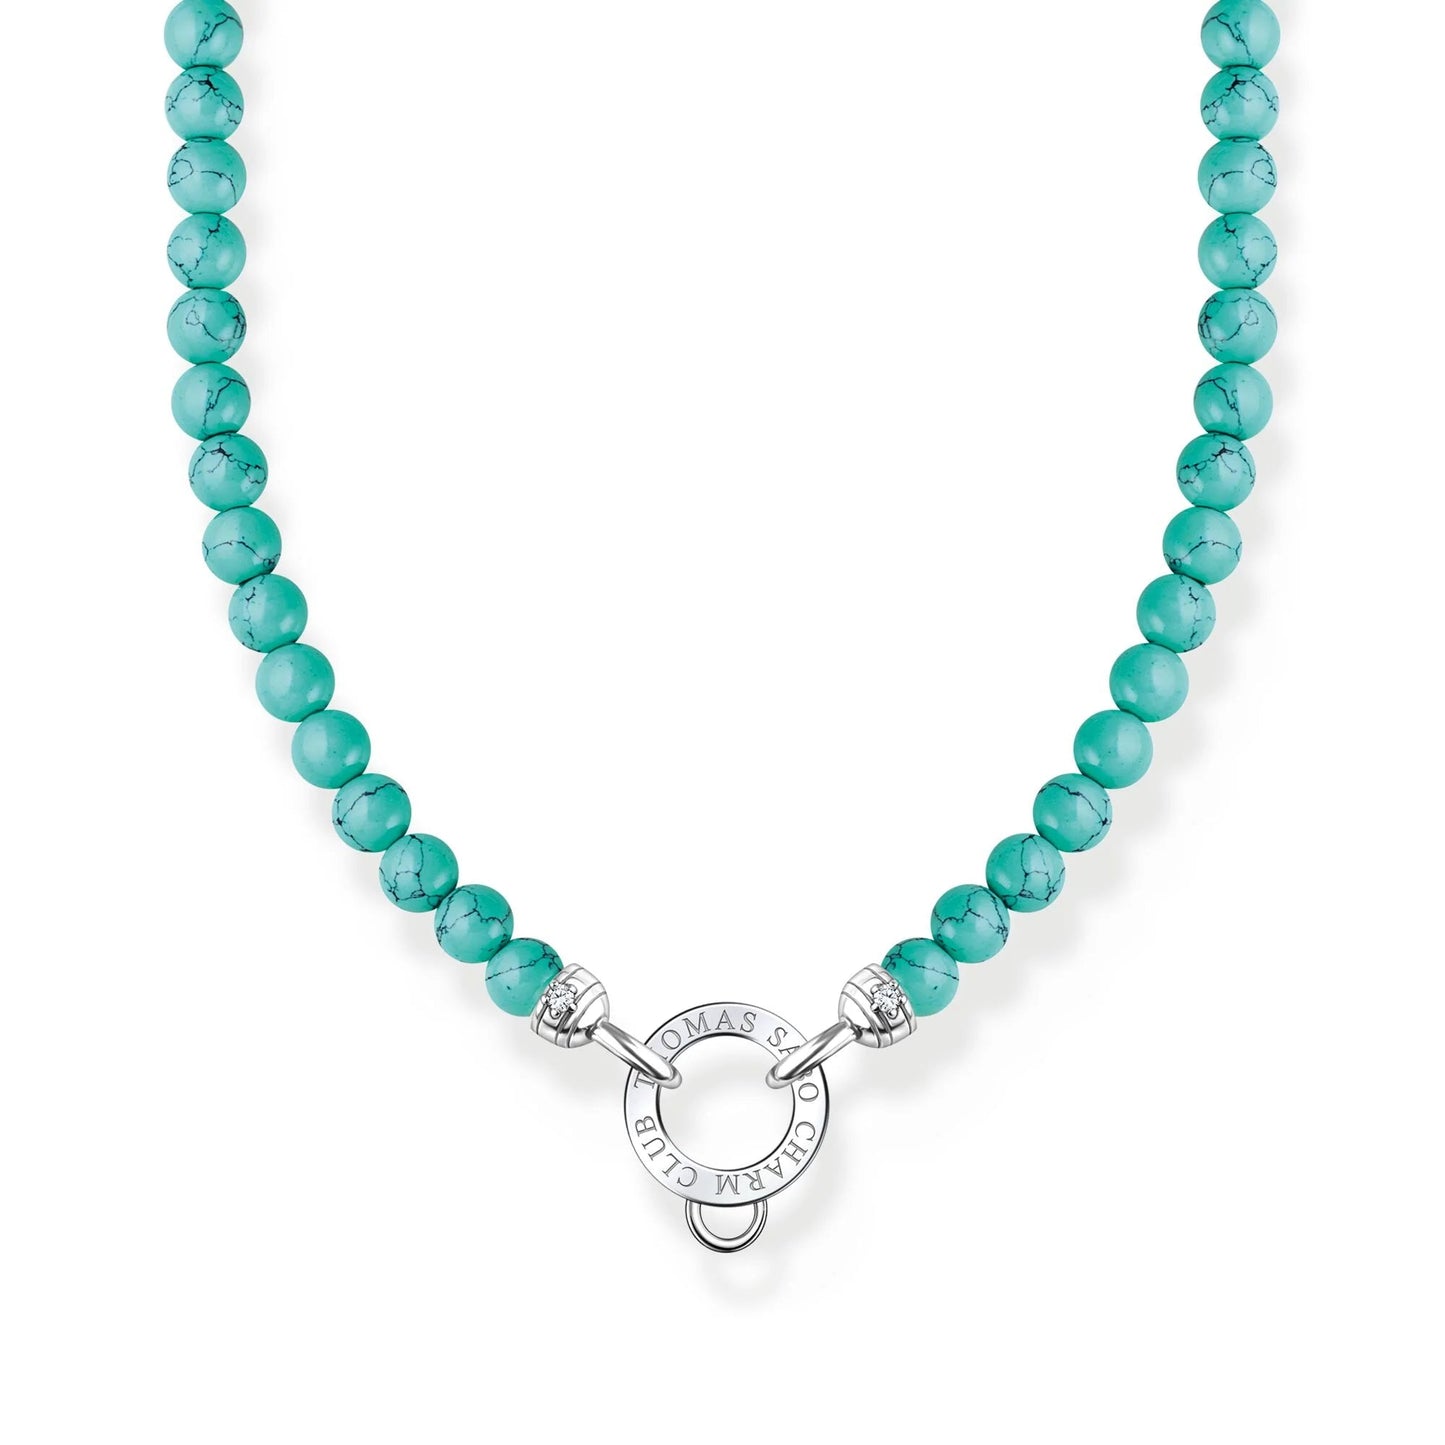 THOMAS SABO Turquoise Beads Charm Necklace